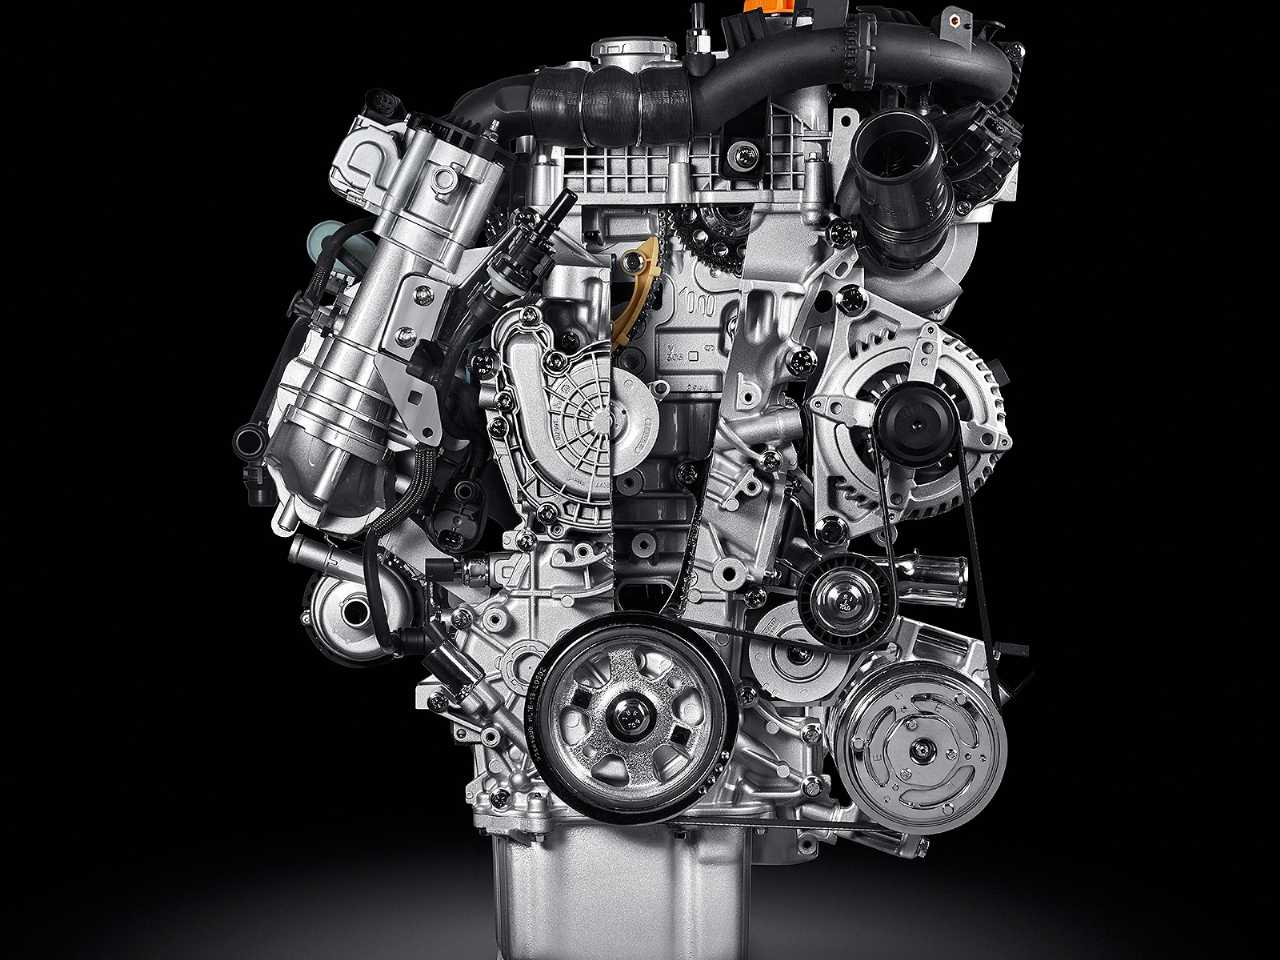 Acima o motor 1.3 turbo já usado pela Fiat Chrysler na Europa